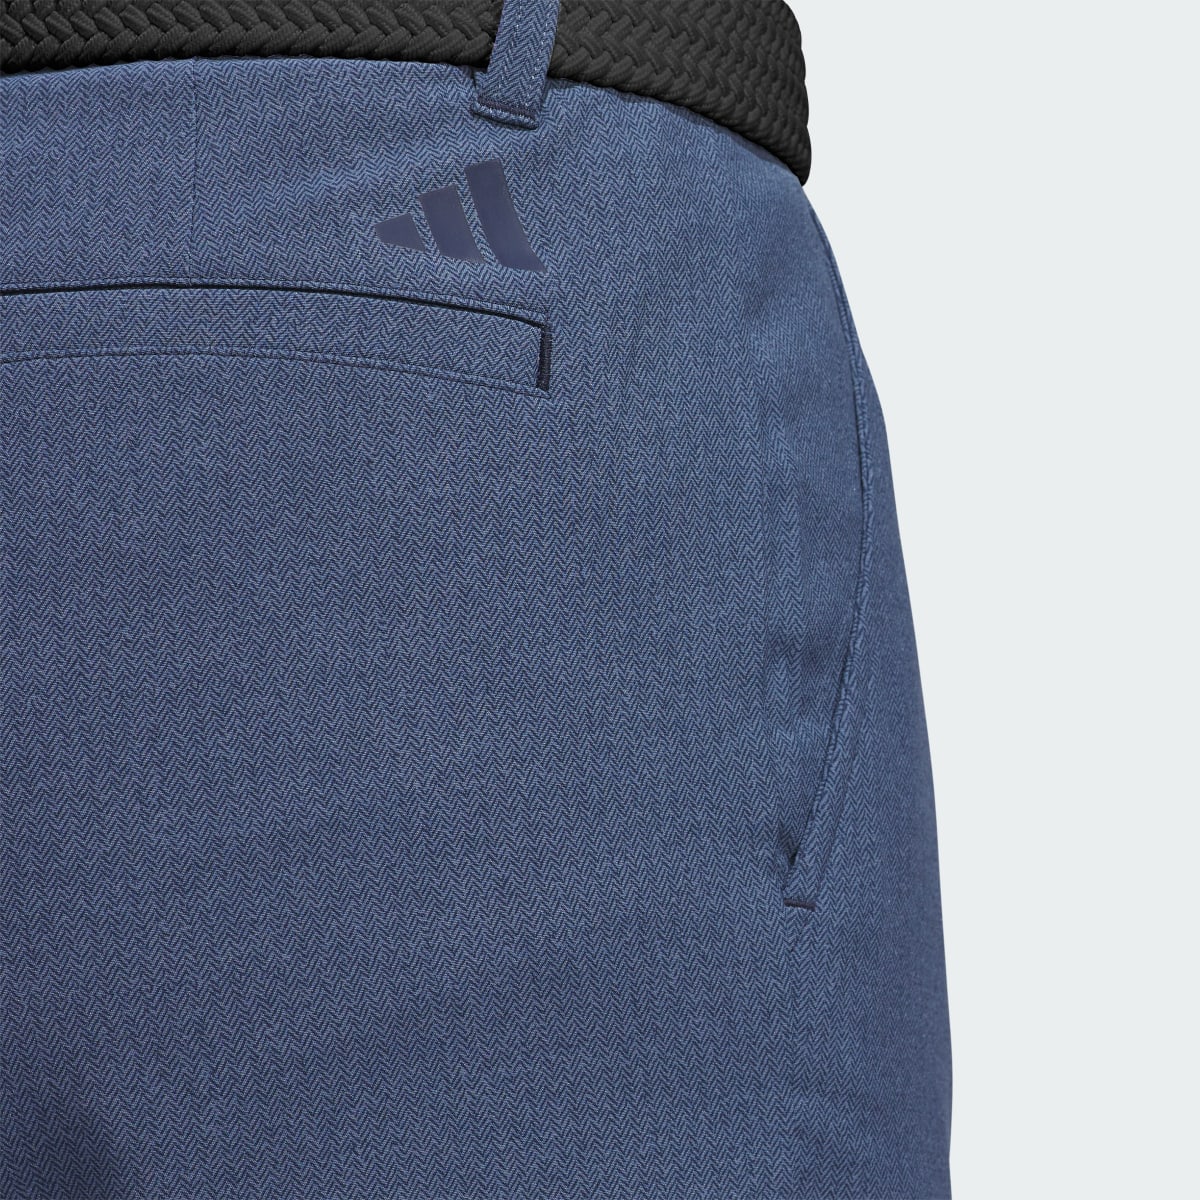 Adidas Ultimate365 Printed Shorts. 4